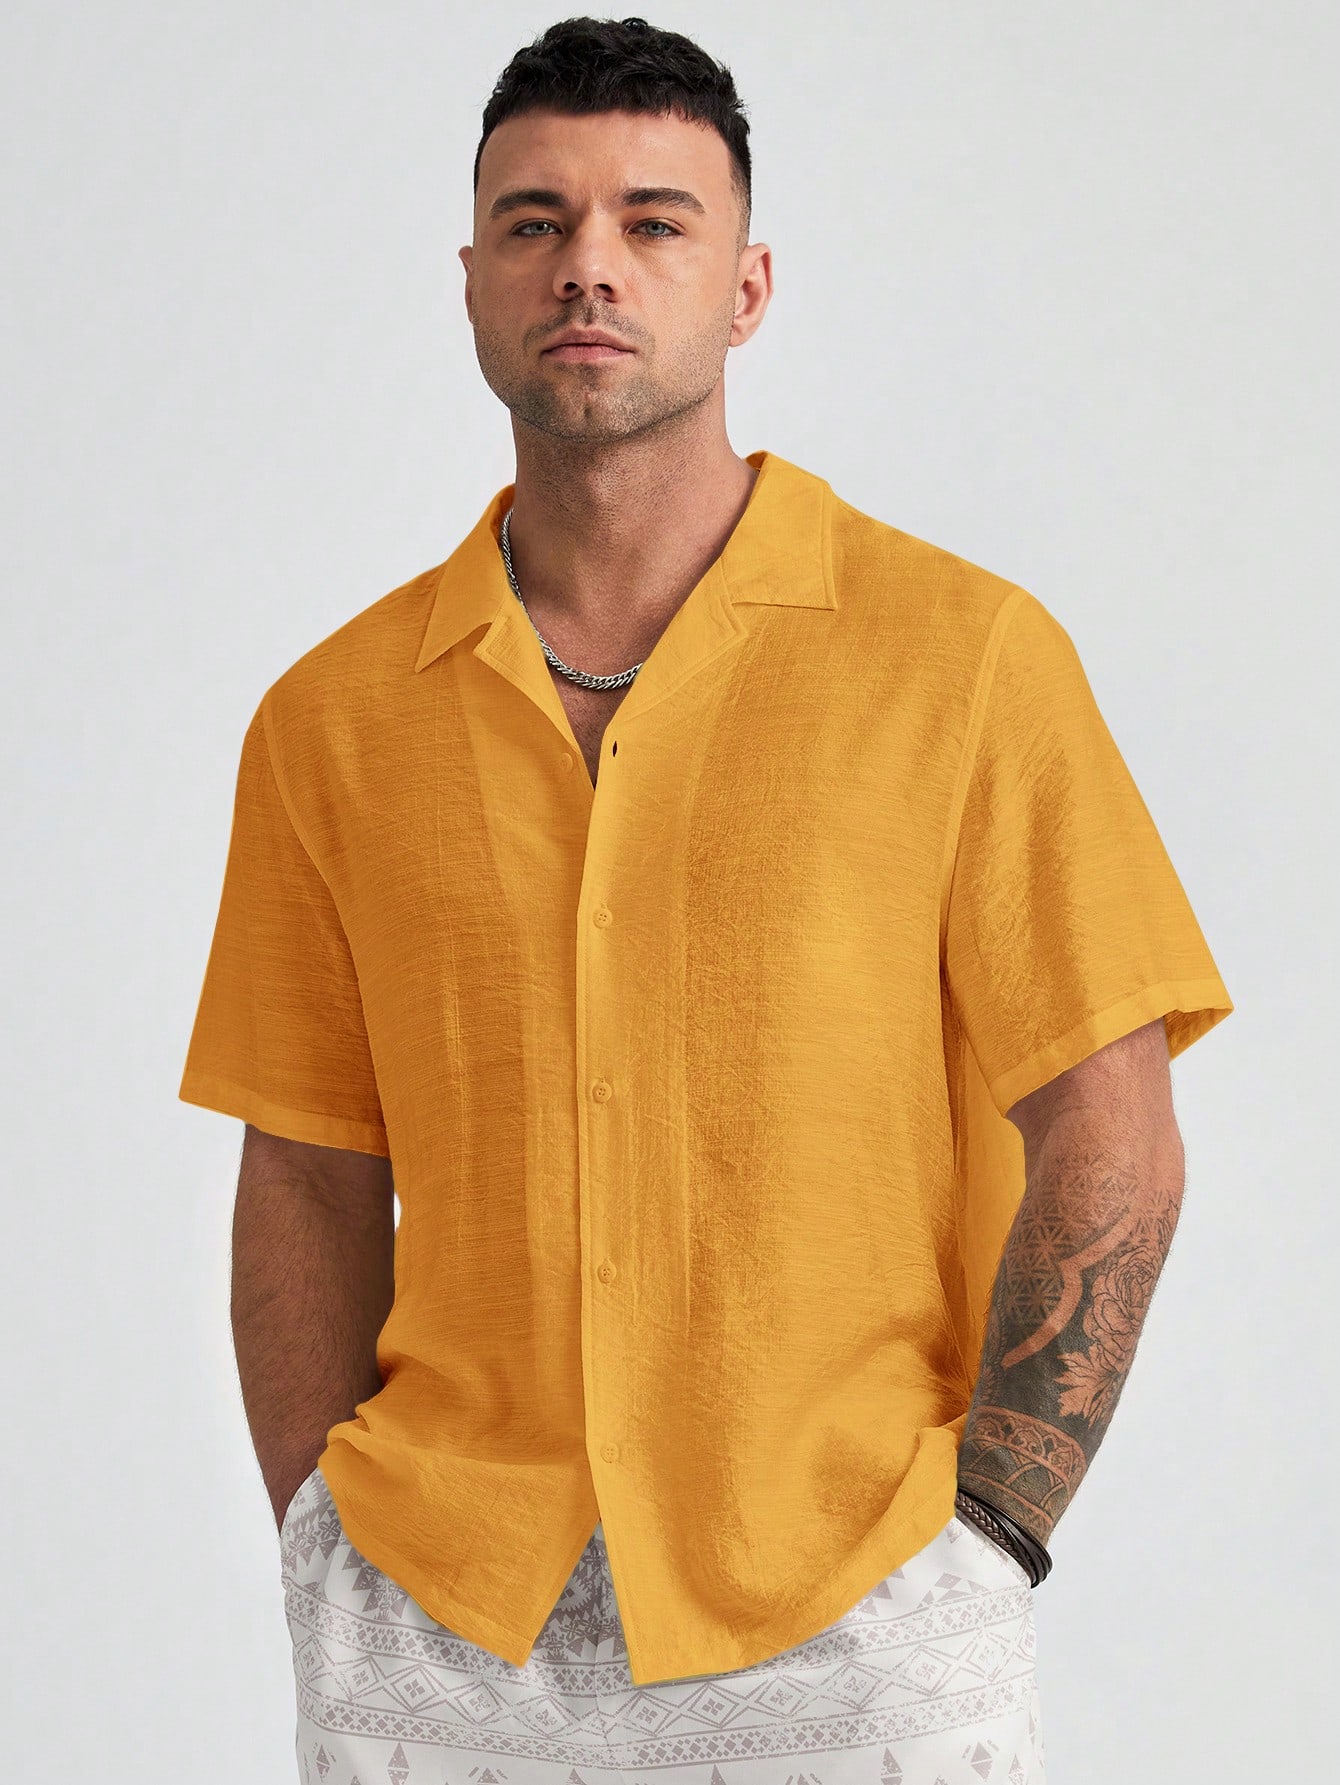 Manfinity Homme Мужская однотонная тканая рубашка больших размеров с коротким рукавом больших размеров, желтый